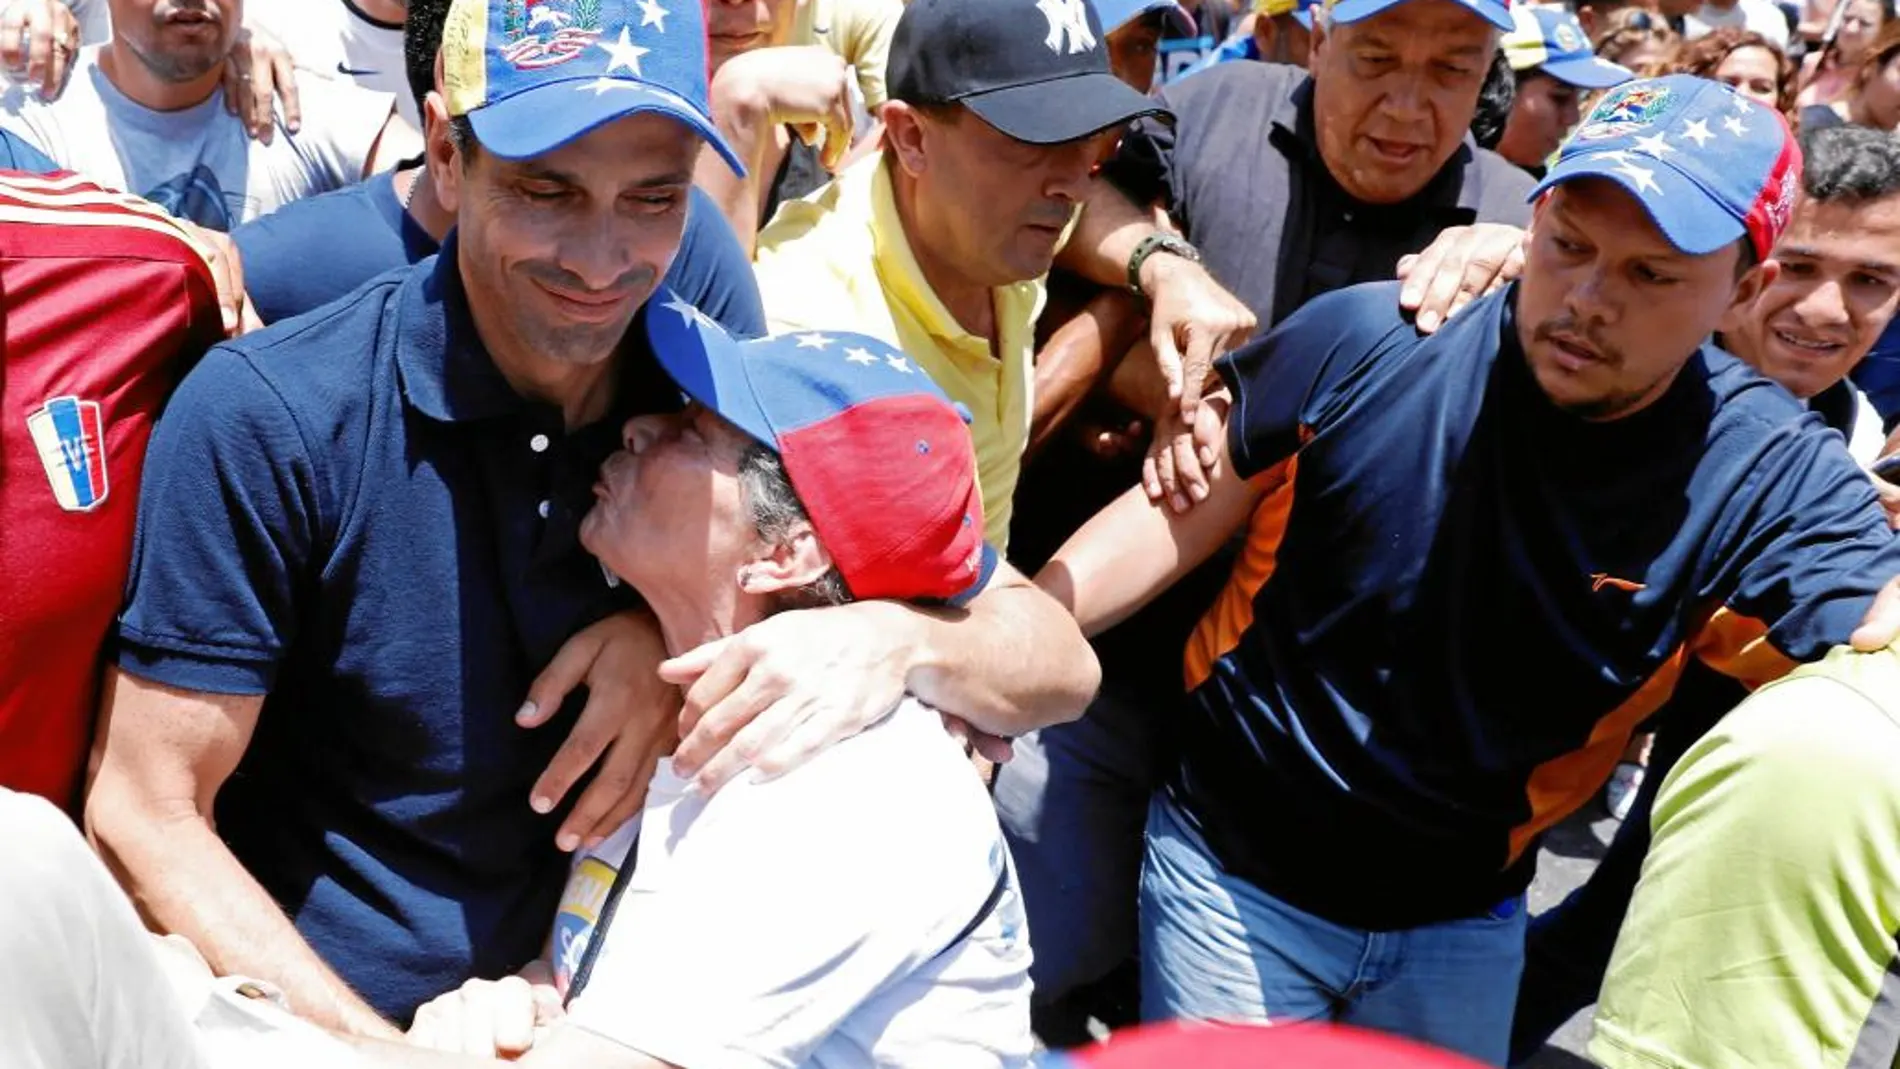 El diputado Henrique Capriles, inhabilitado por quince años, recibe el apoyo de varios manifestantes en la marcha de ayer en Caracas decibe el apoyo de la gente